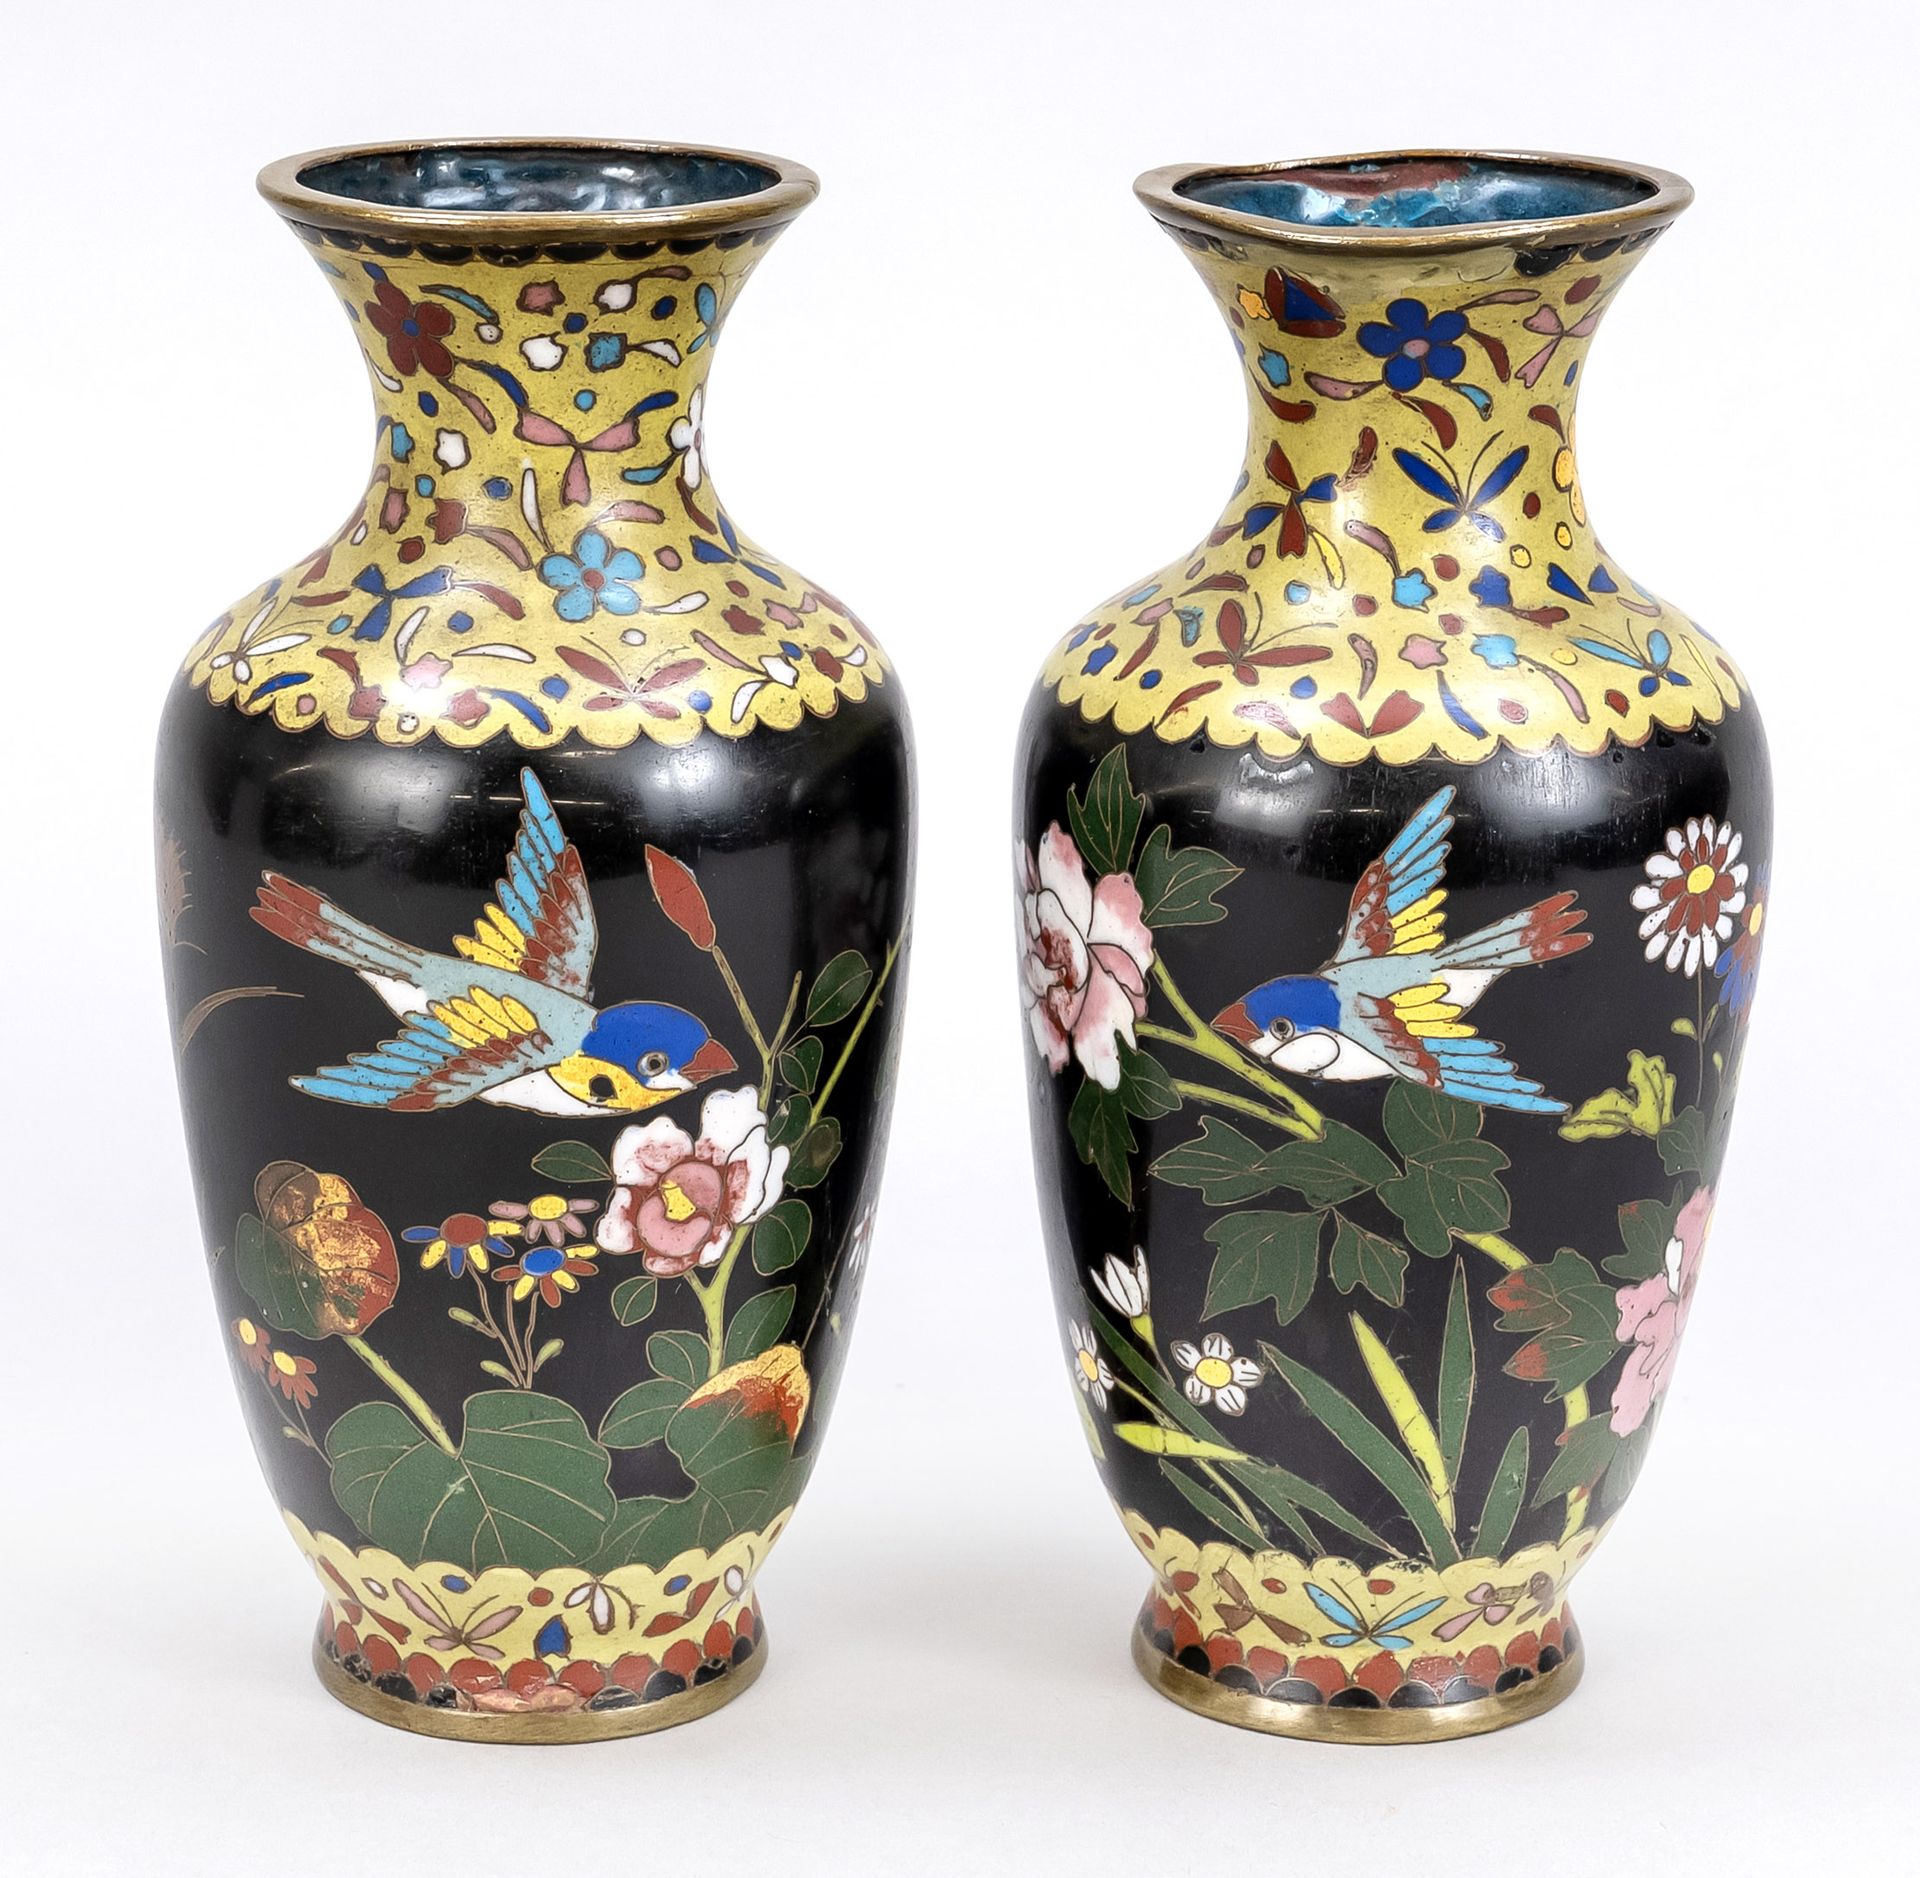 Null 景泰蓝花瓶一对，日本，约1900年（明治）。在黑底上，在盛开的花朵之间有飞鸟的环形装饰。略有损坏，高19厘米